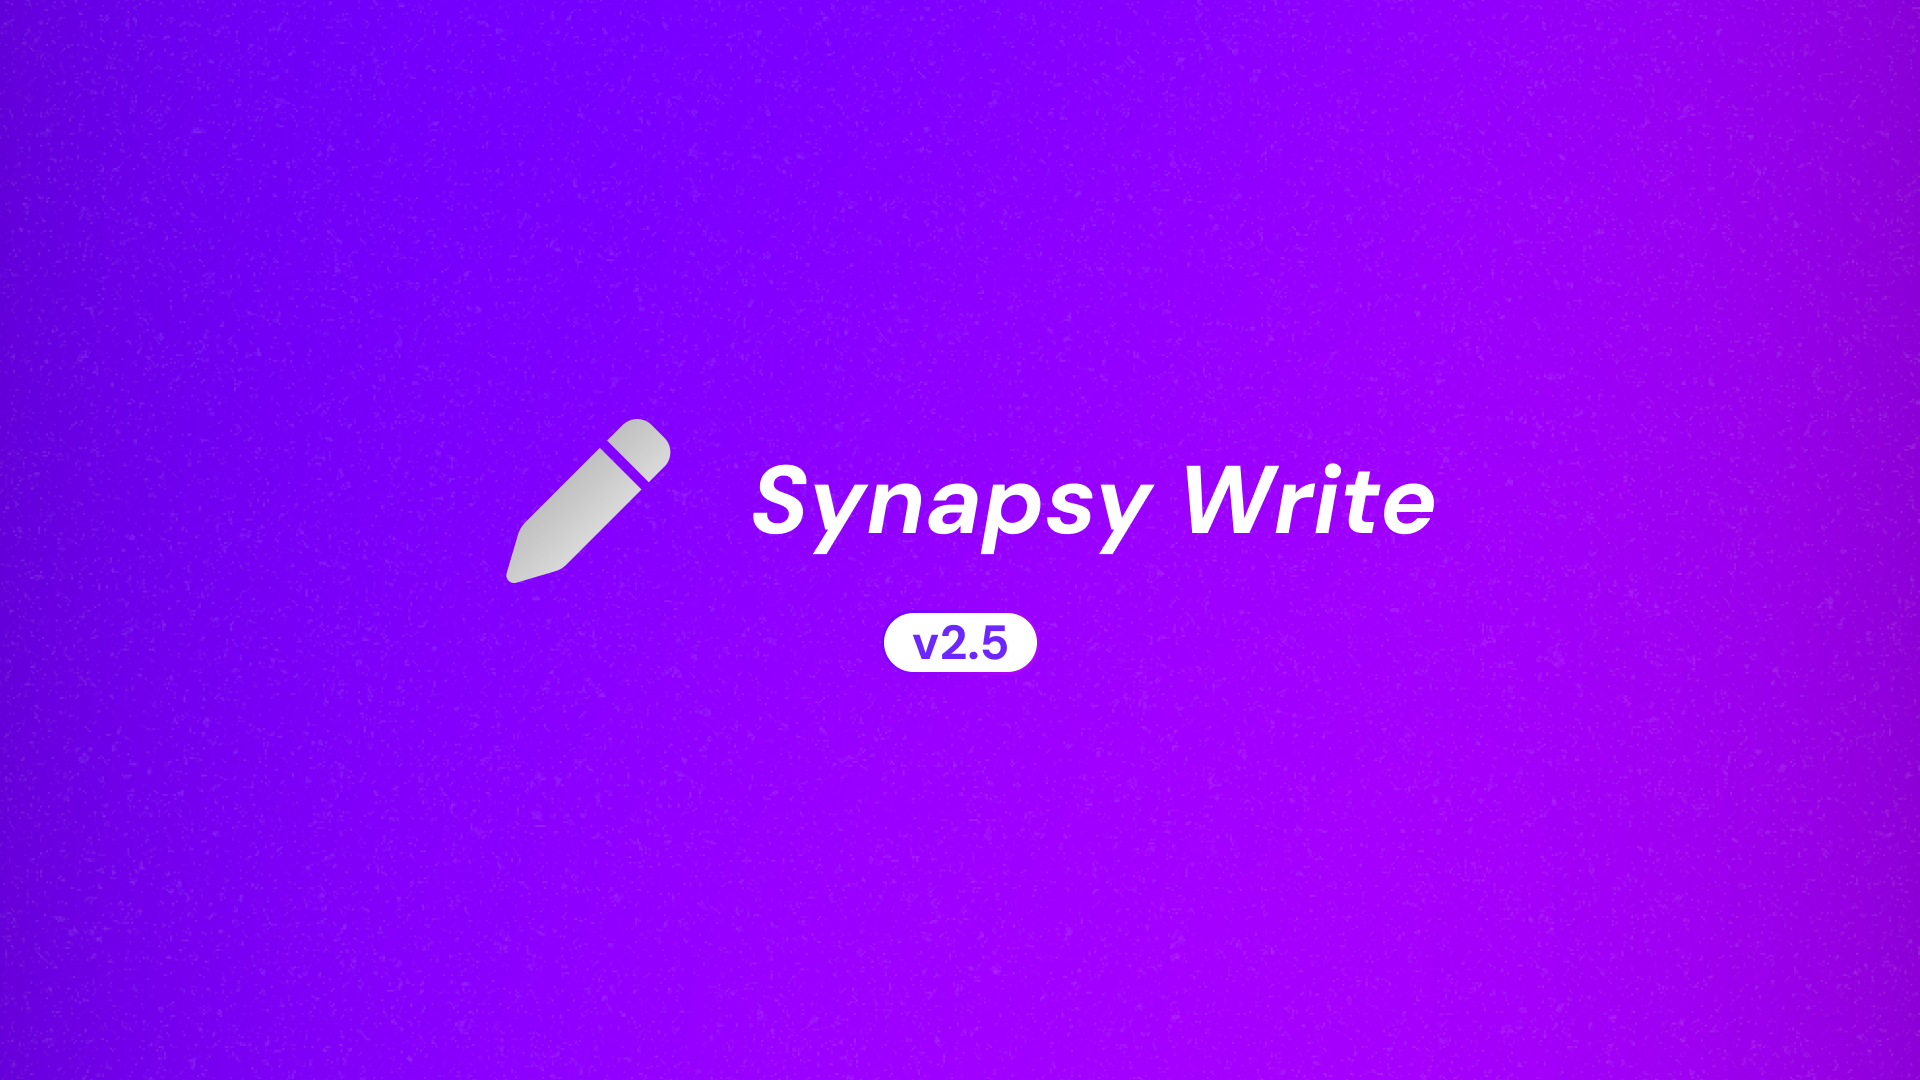 Synapsy Write v2.5.0 Changelog